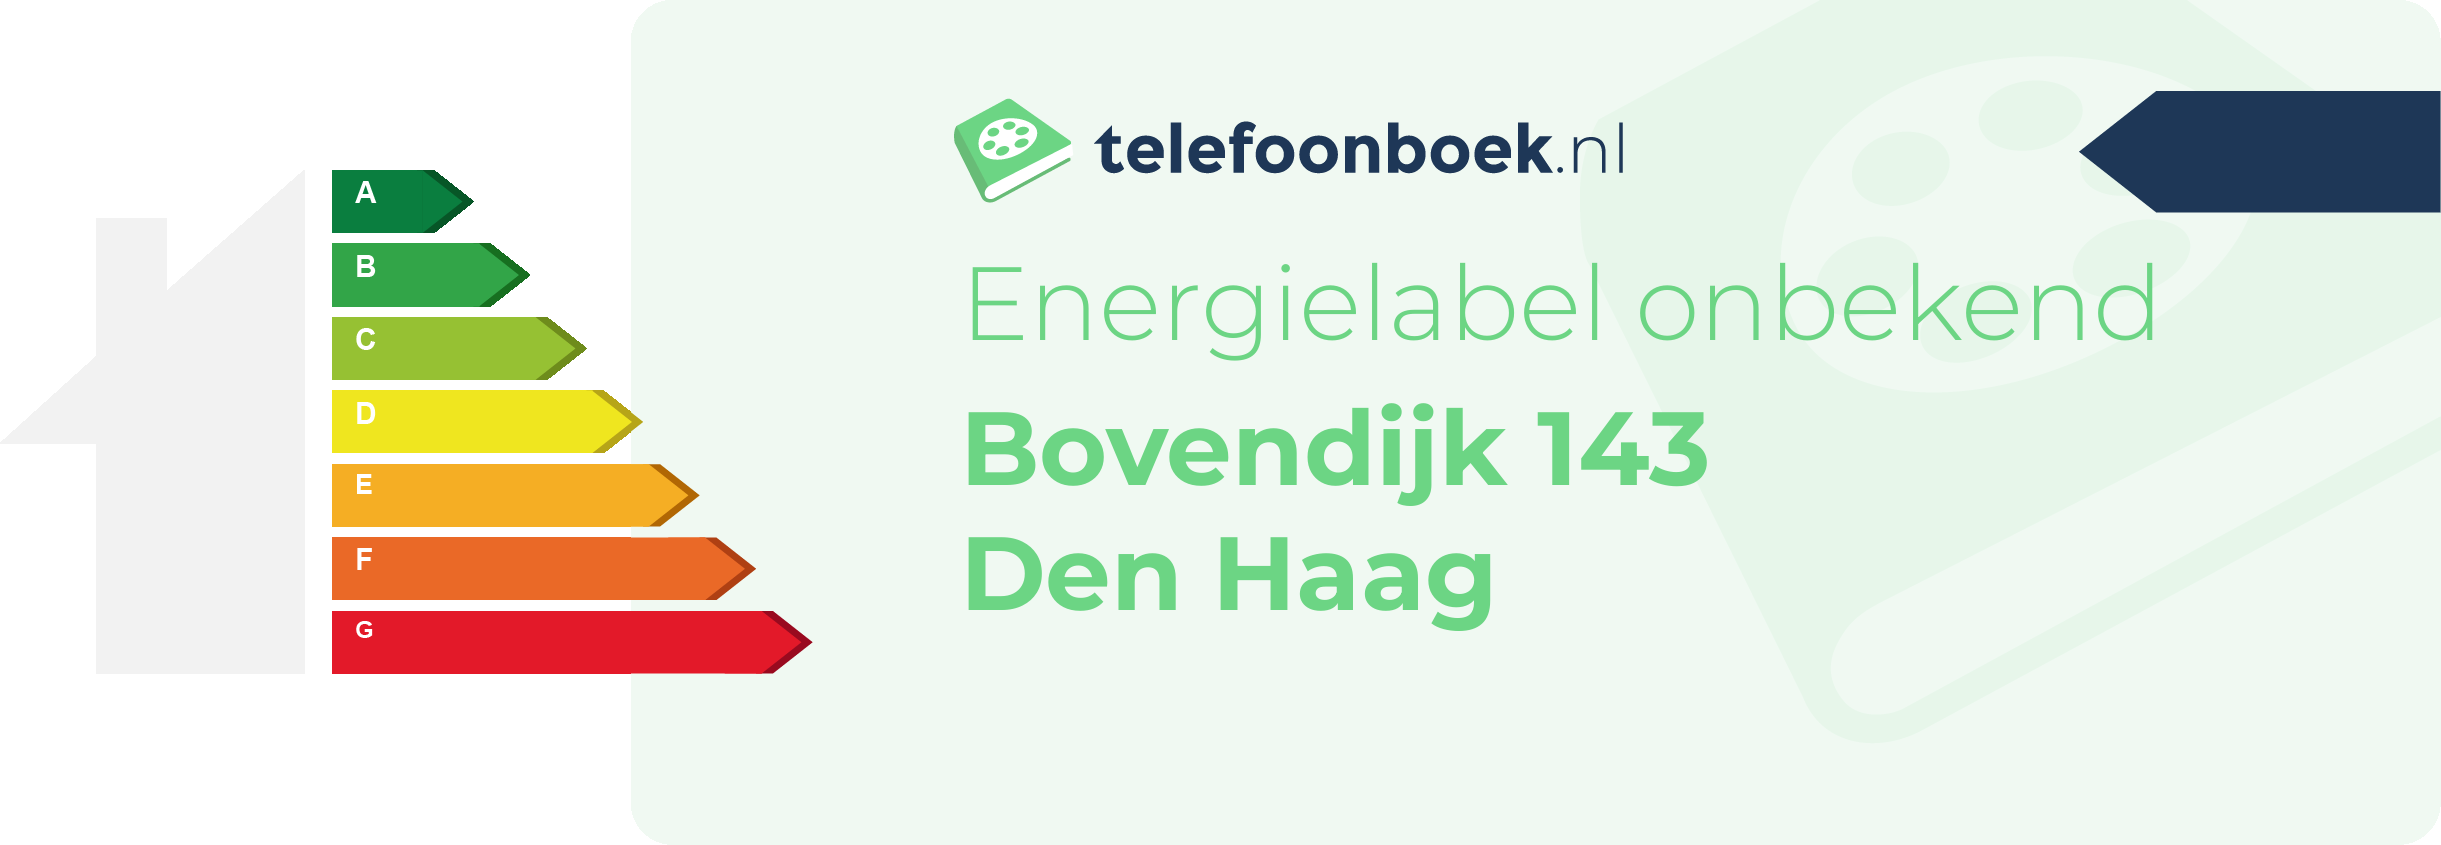 Energielabel Bovendijk 143 Den Haag